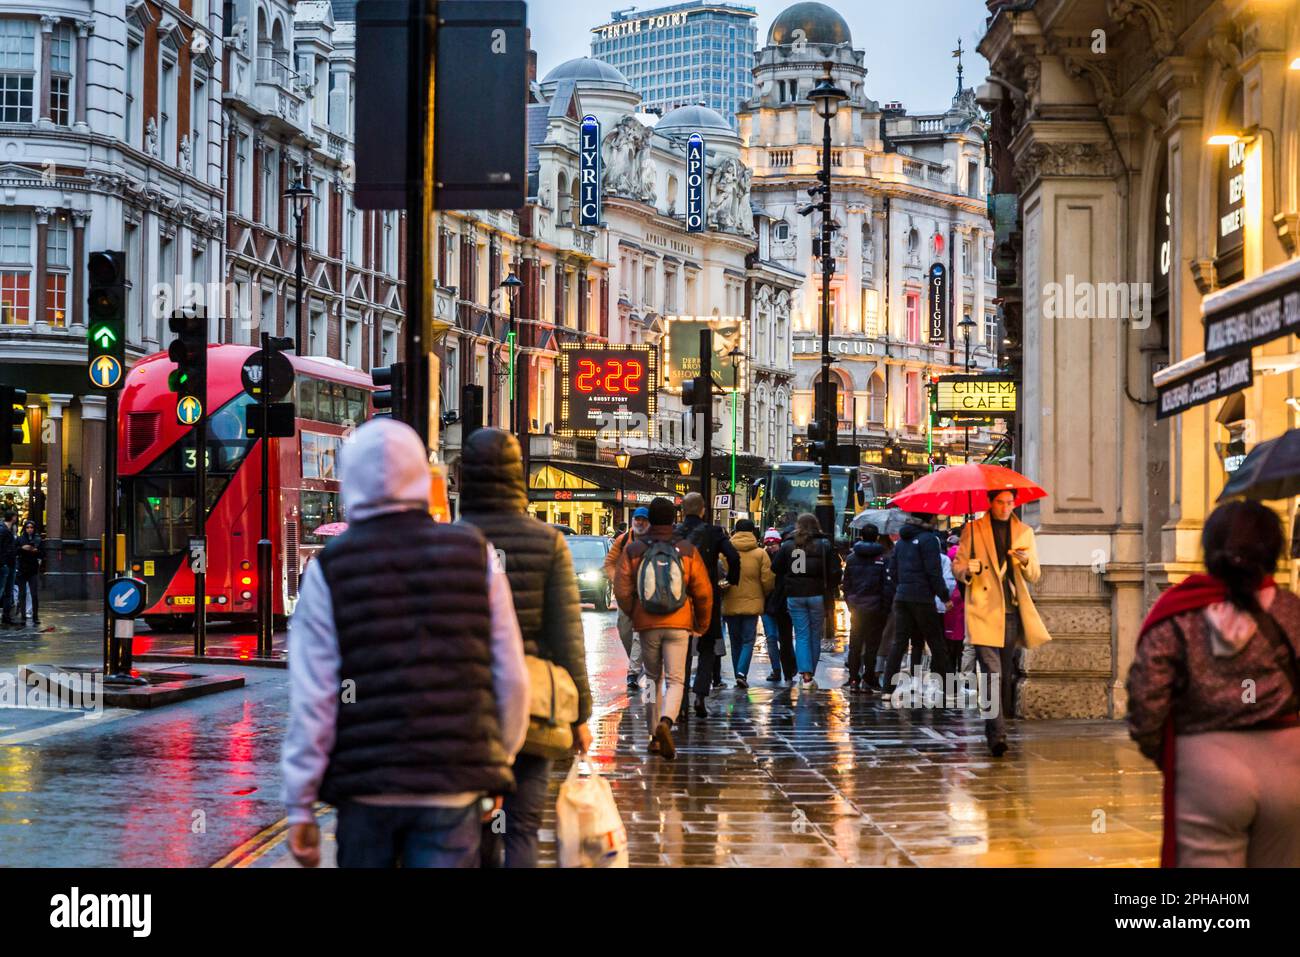 Personnes marchant sous la pluie dans Shaftesbury Avenue, une rue célèbre dans le West End Theatre Land, Londres, Angleterre, Royaume-Uni Banque D'Images